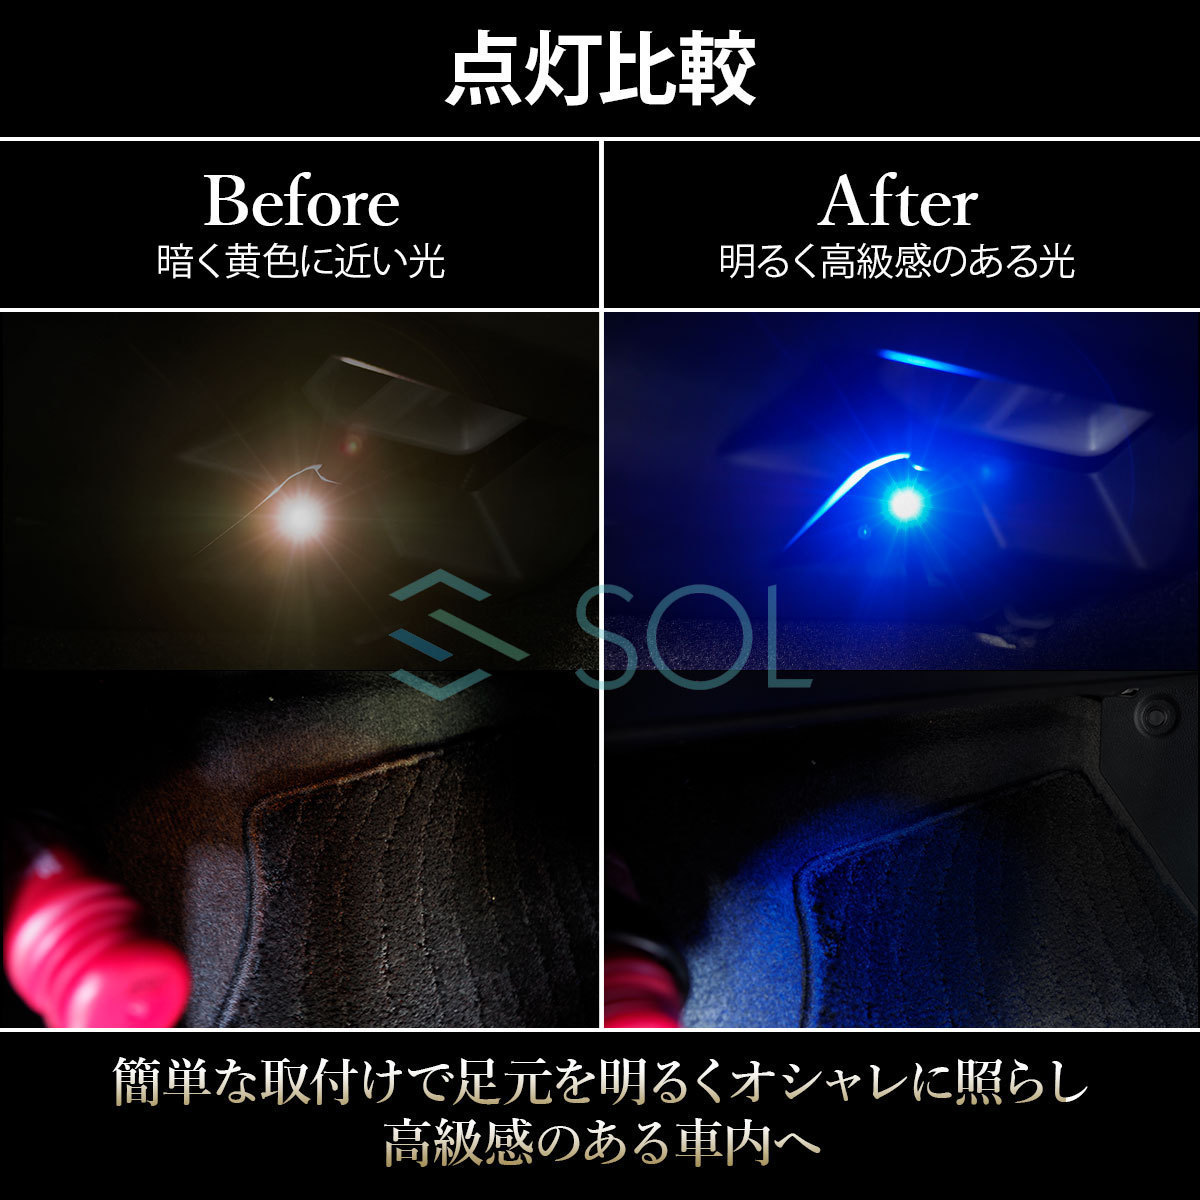 トヨタ イスト パッソセッテ ポルテ スペード SOLオリジナル LED イルミネーションランプ フットランプ インナーランプ ブルー 2個セット_画像4